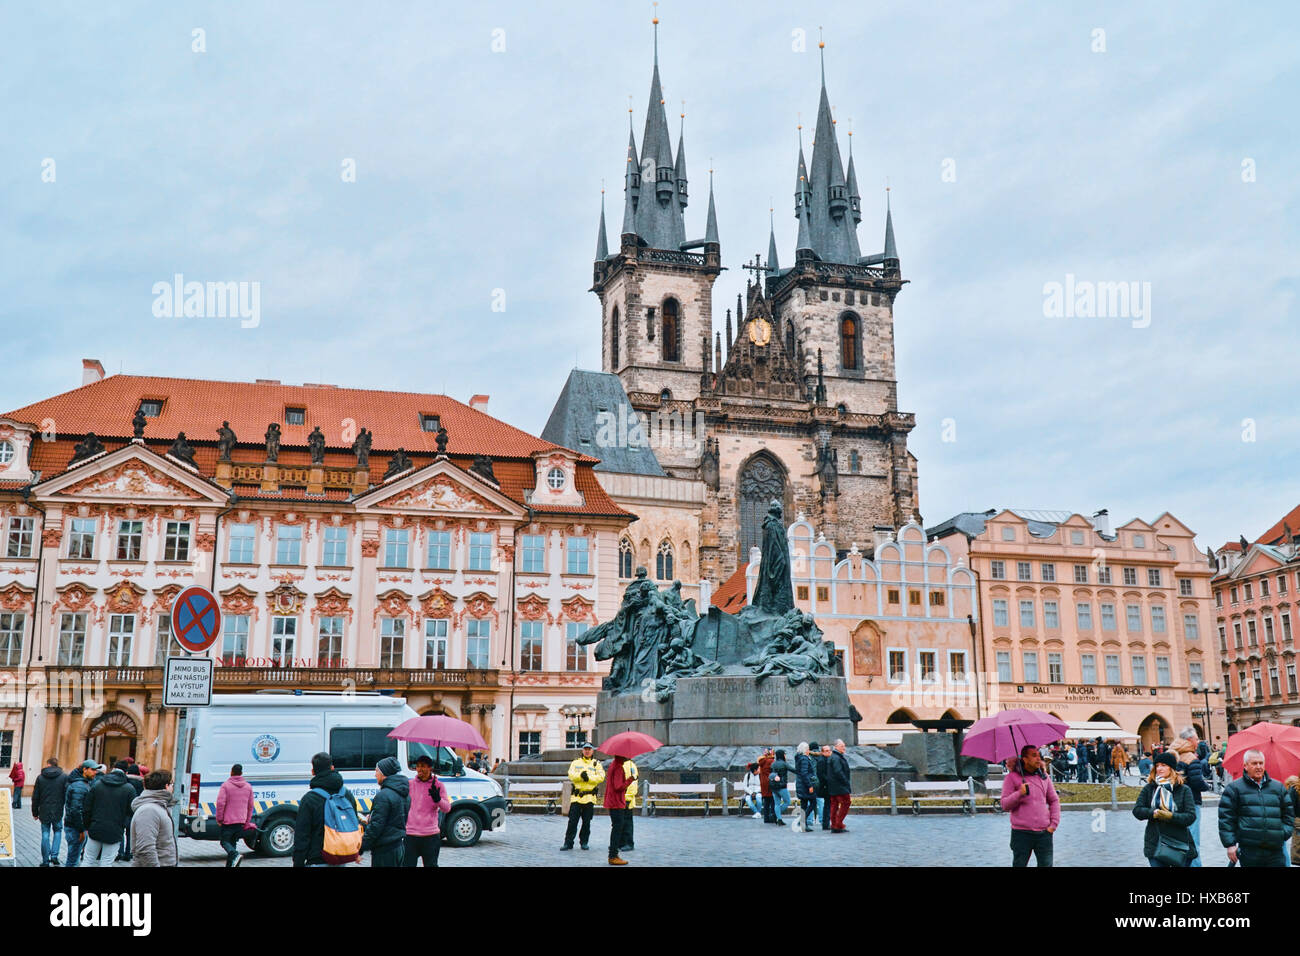 Der Altstädter Ring im Herzen von Prag - Prag / Tschechien - 20. März 2017 Stockfoto